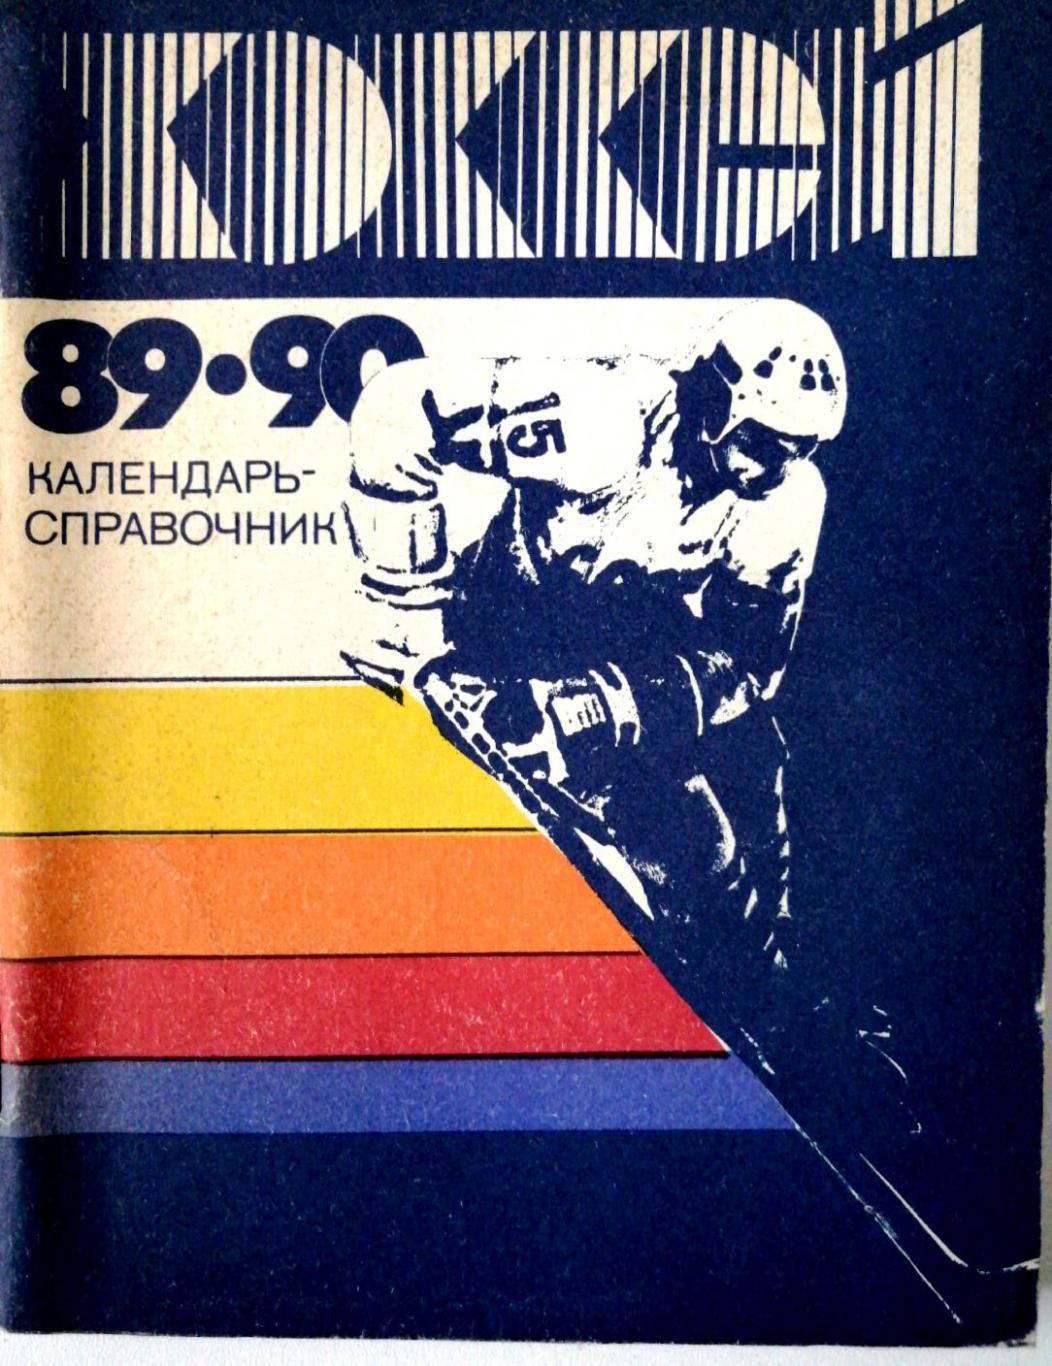 Хоккей. Календарь-справочник Ленинград 1989/90